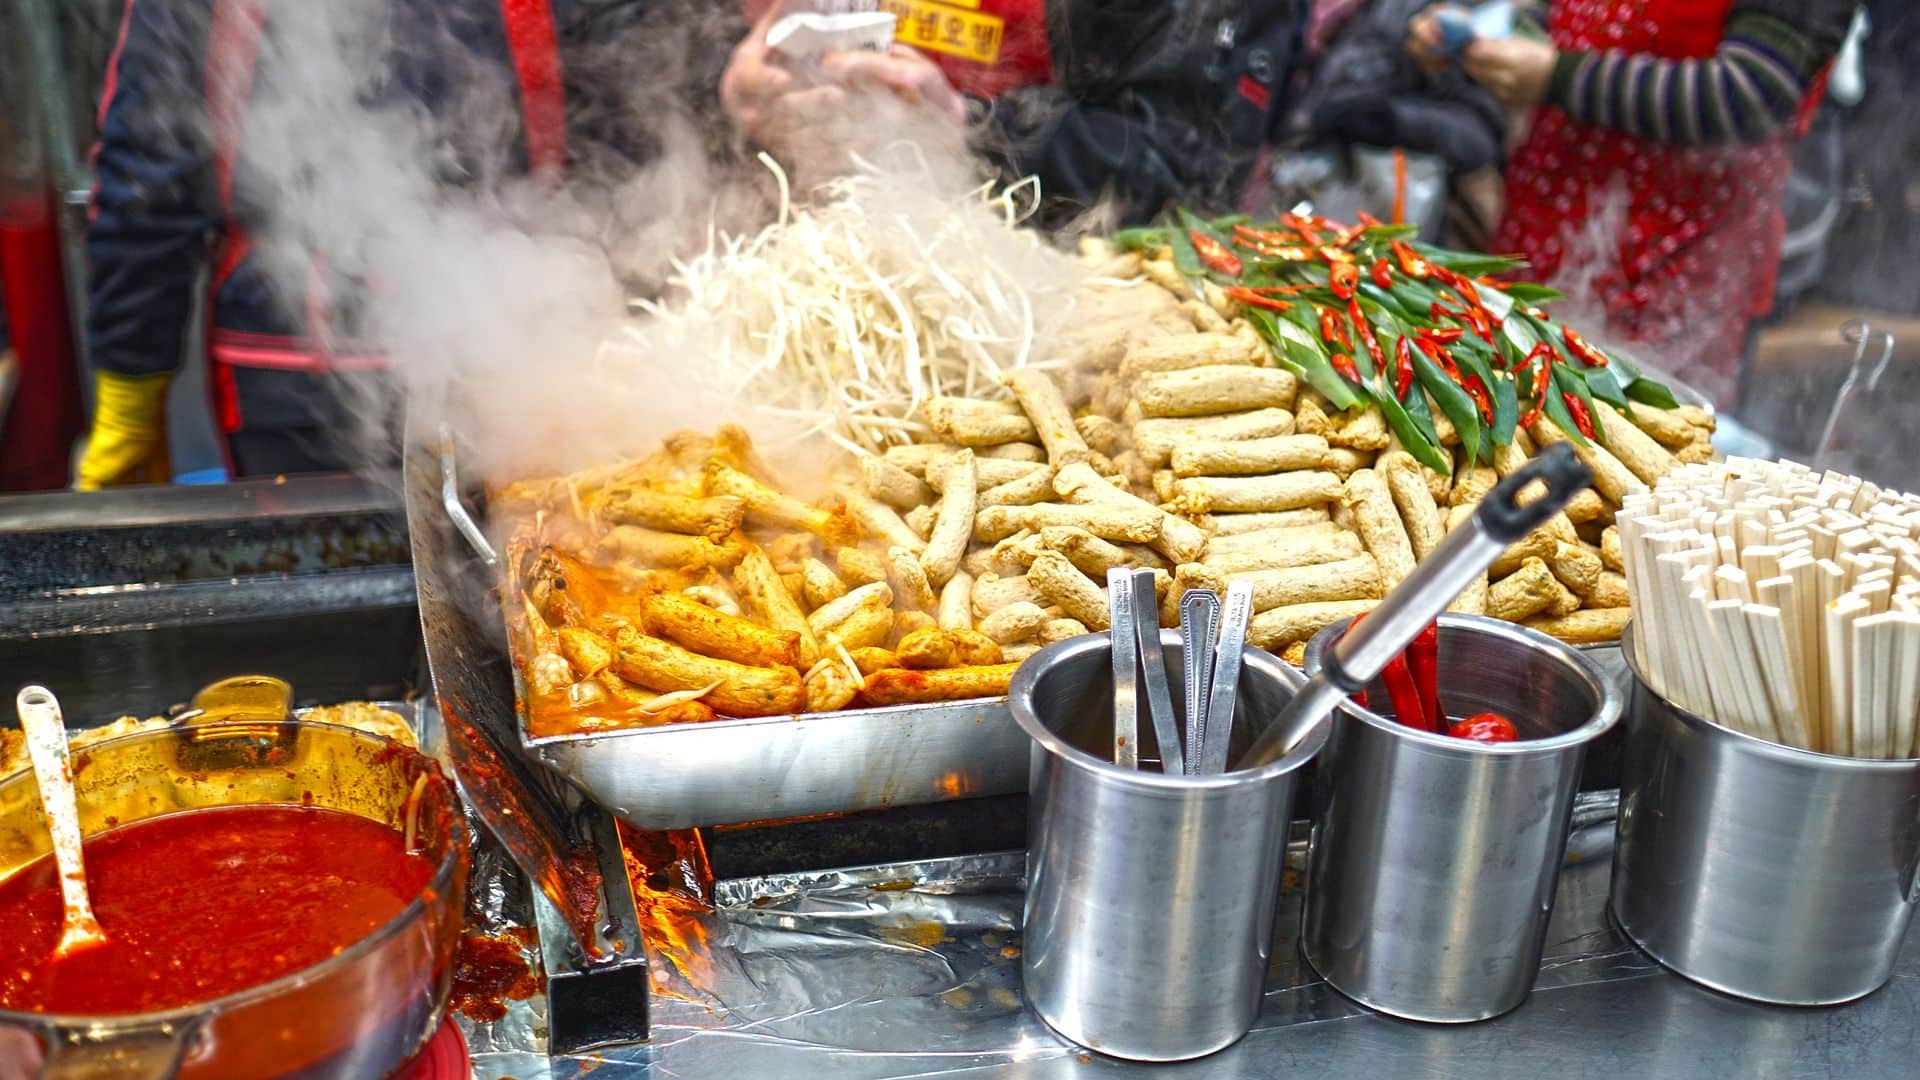 מטיילים בעולם נוטים לחפש שווקי אוכל רחוב כדי להתנסות באוכל מקומי